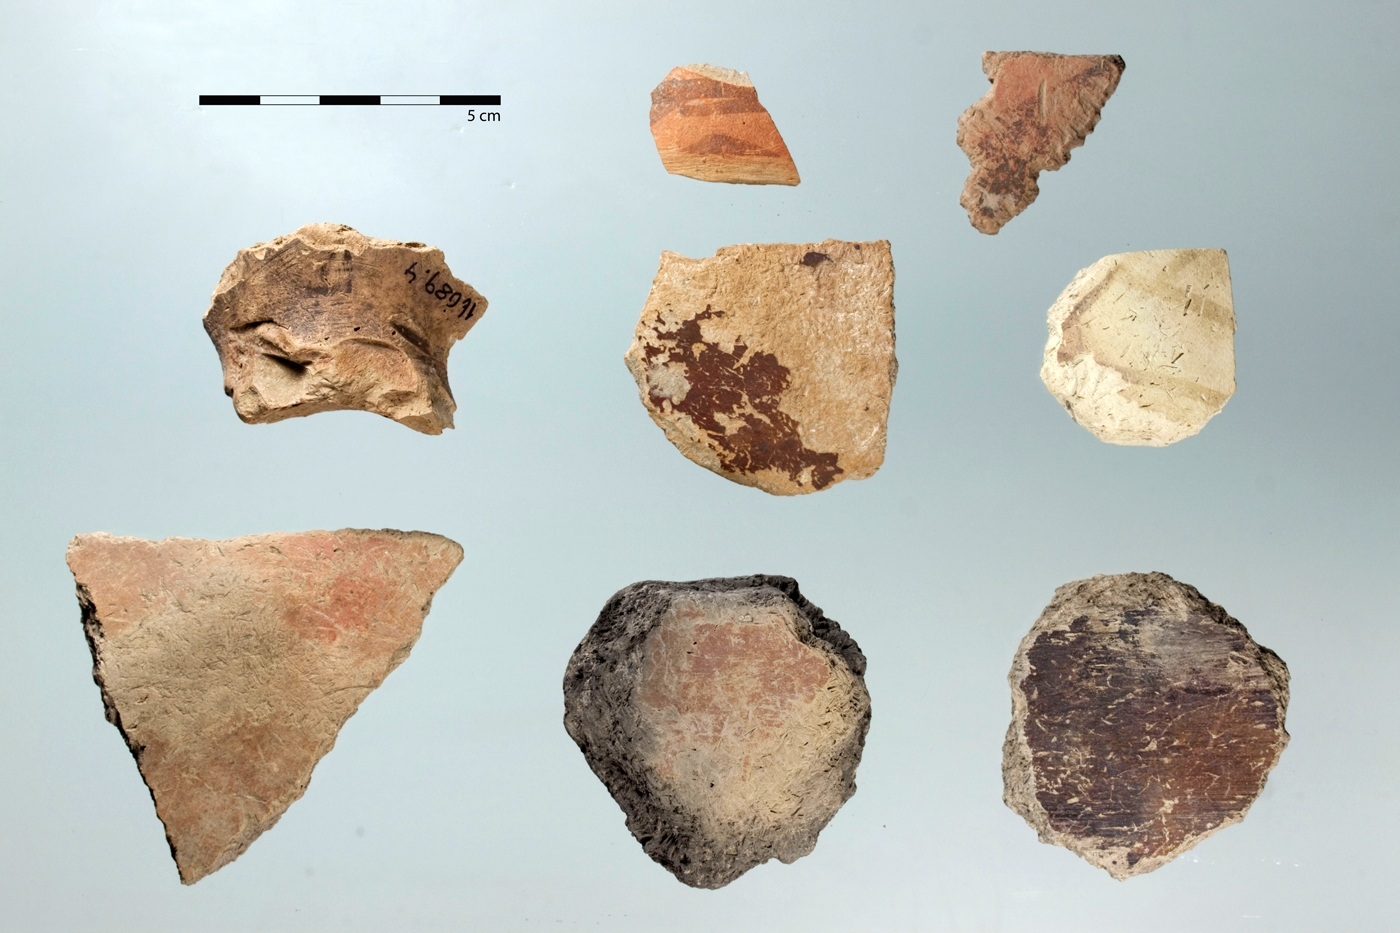 Werkzeuge aus Keramik, hergestellt sowohl aus neolithischen Scherben (untere Reihe, mittlere Reihe rechts und mittig) als auch aus Scherben des Meana-Horizonts (mittlere Reihe links und obere Reihe).